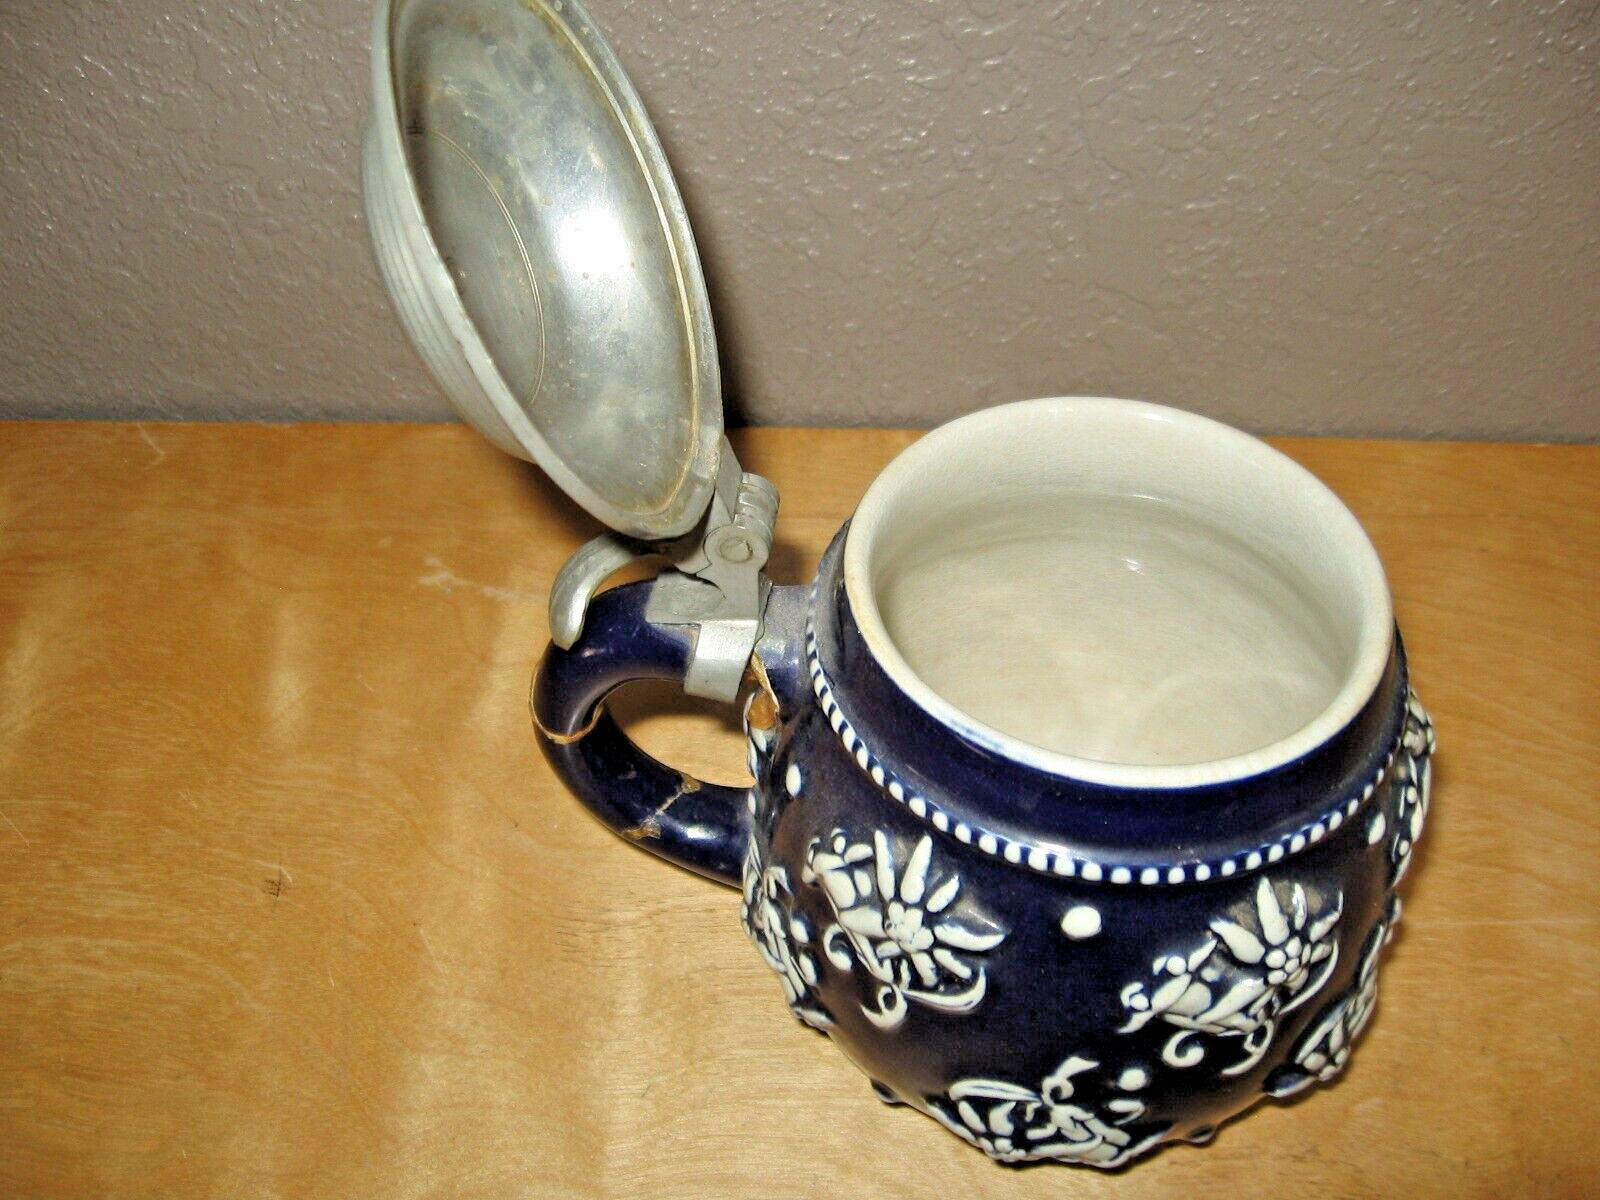 Vintage german beer stein mug with pewter lid cobalt blue and white flowers